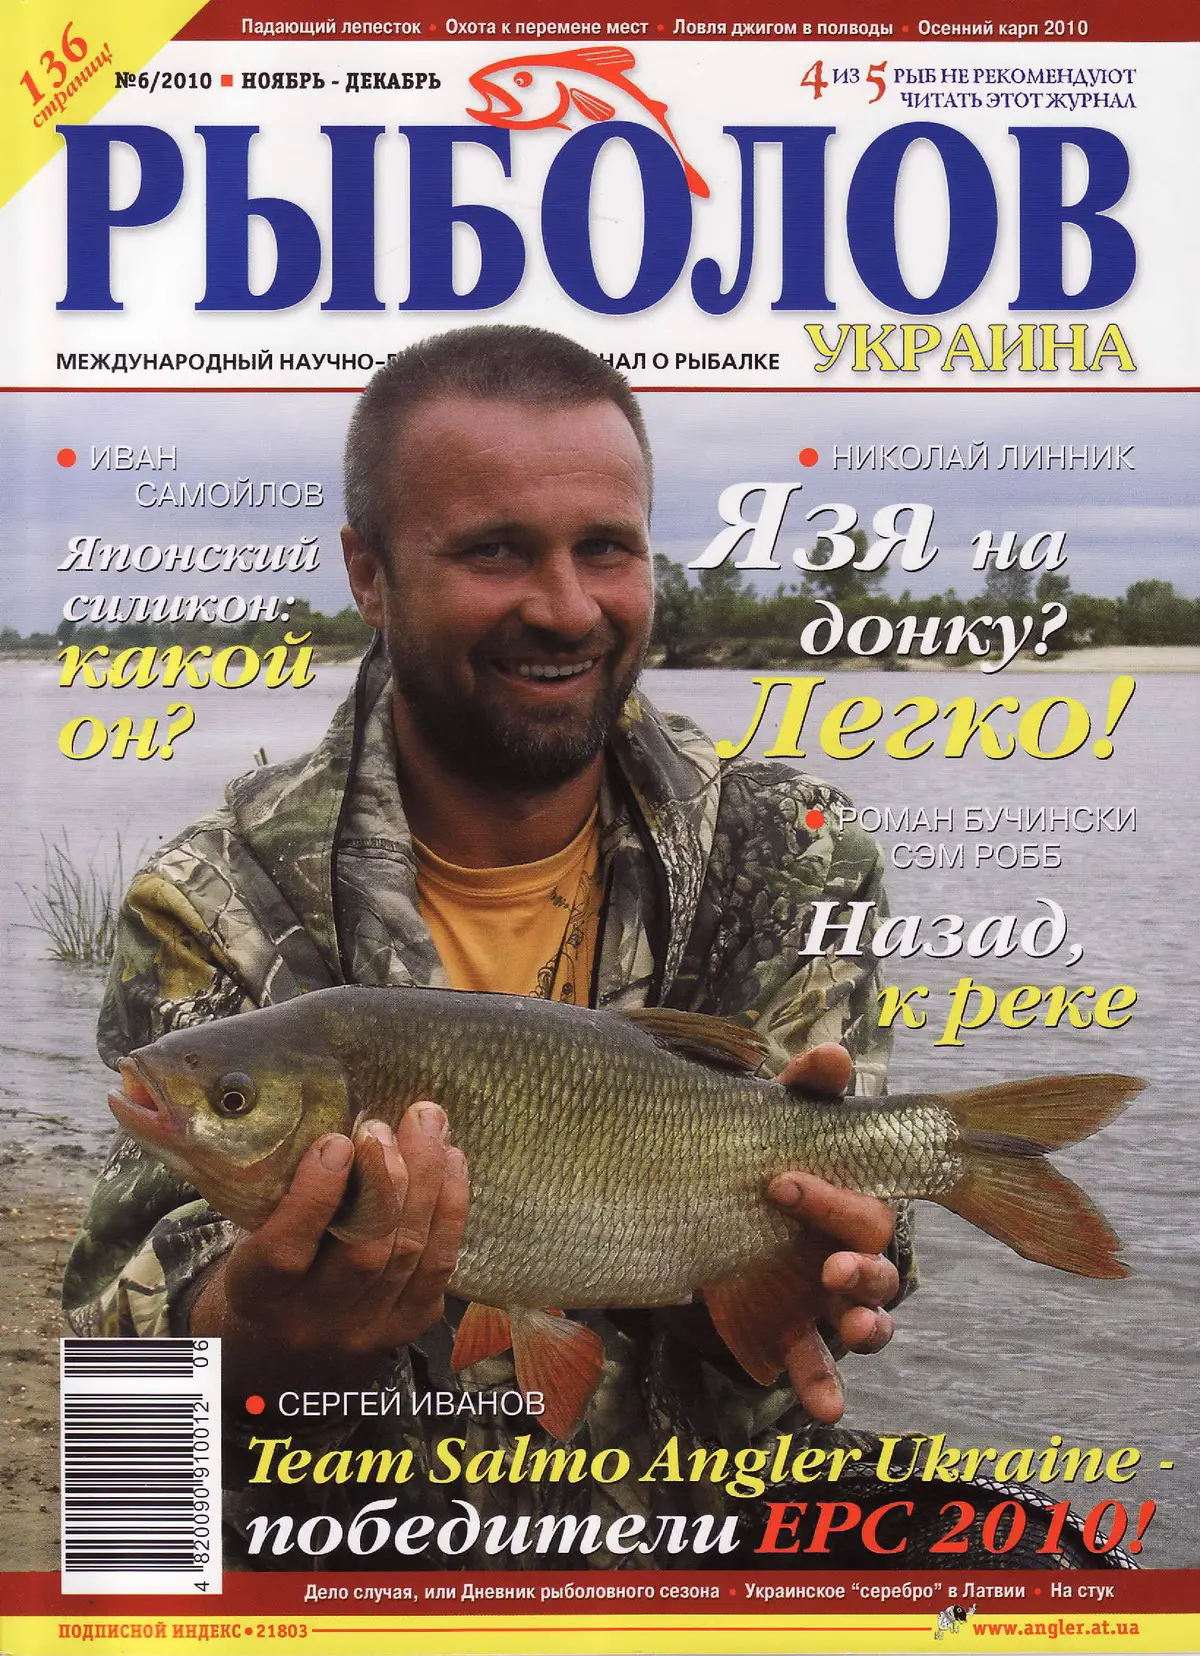 Обложка рыболовного журнала